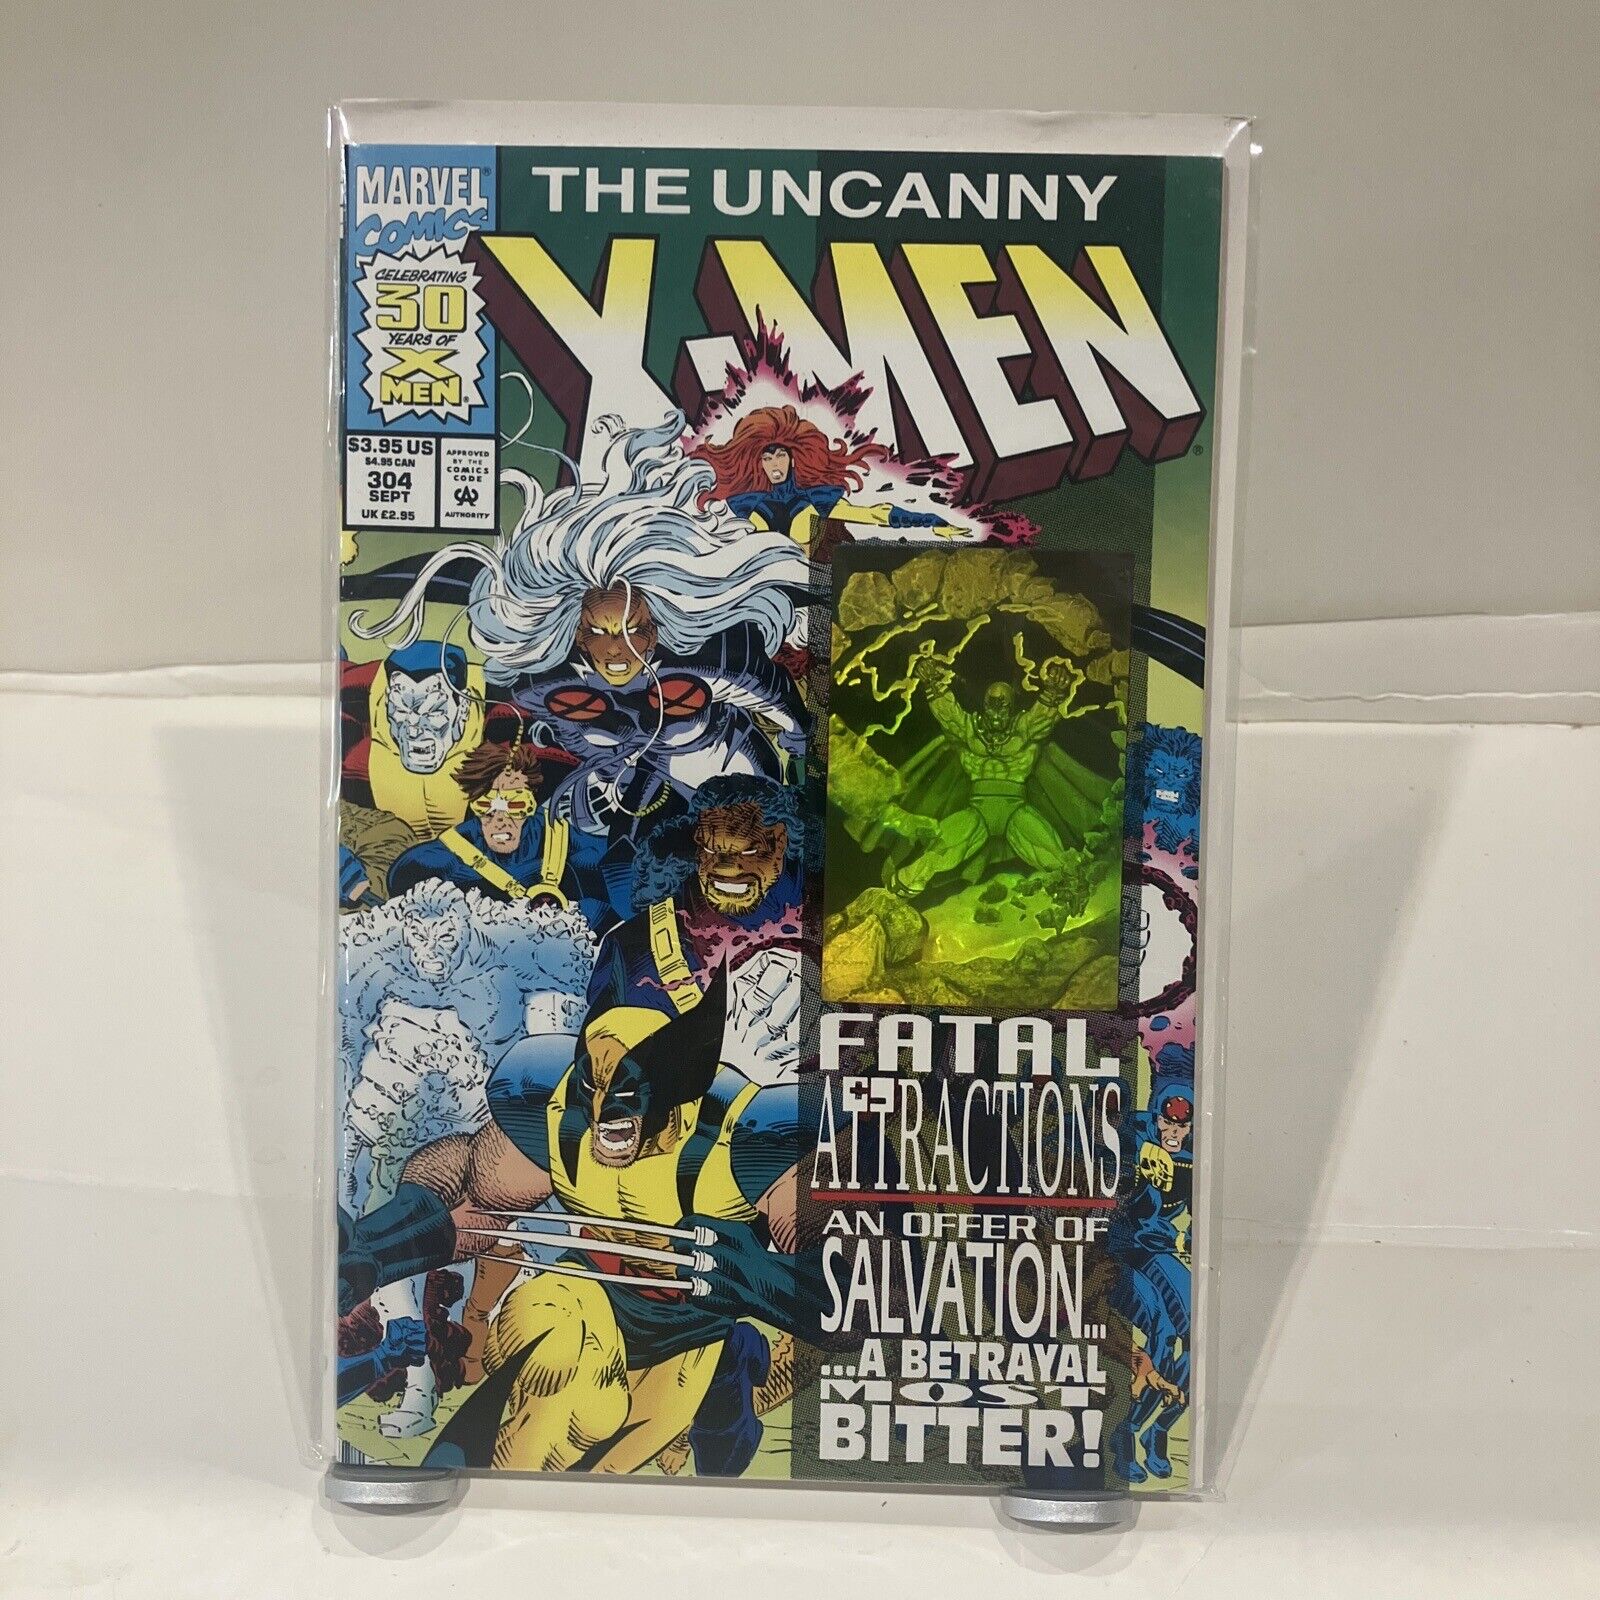 The Uncanny X-Men #304 (Marvel, September 1993)